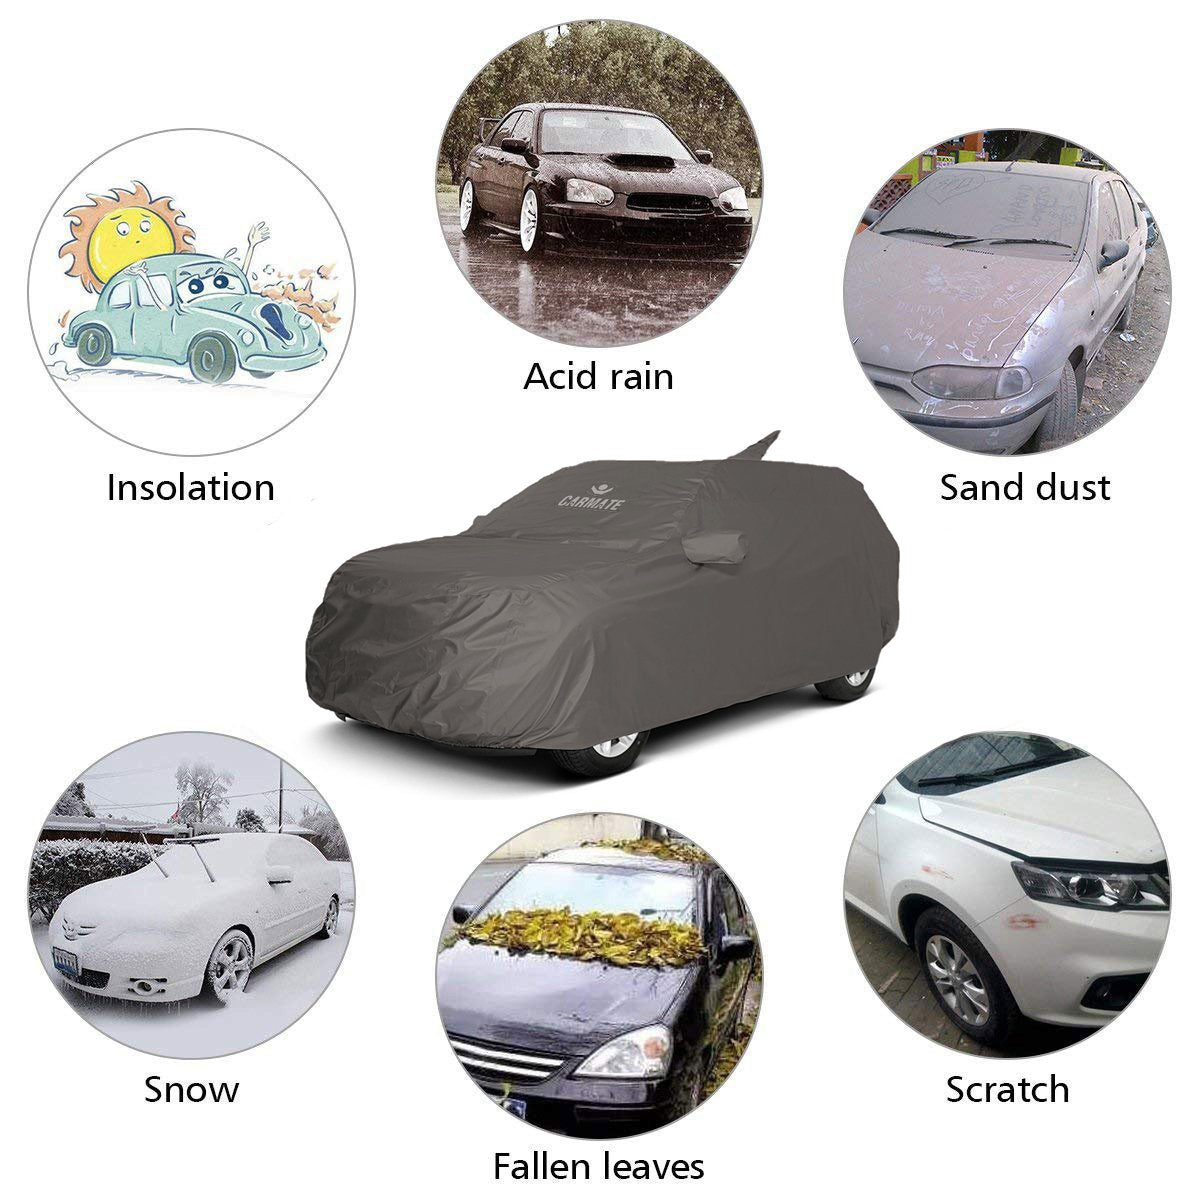 Carmate Car Body Cover 100% Waterproof Pride (Grey) for Skoda - Rapid - CARMATE®